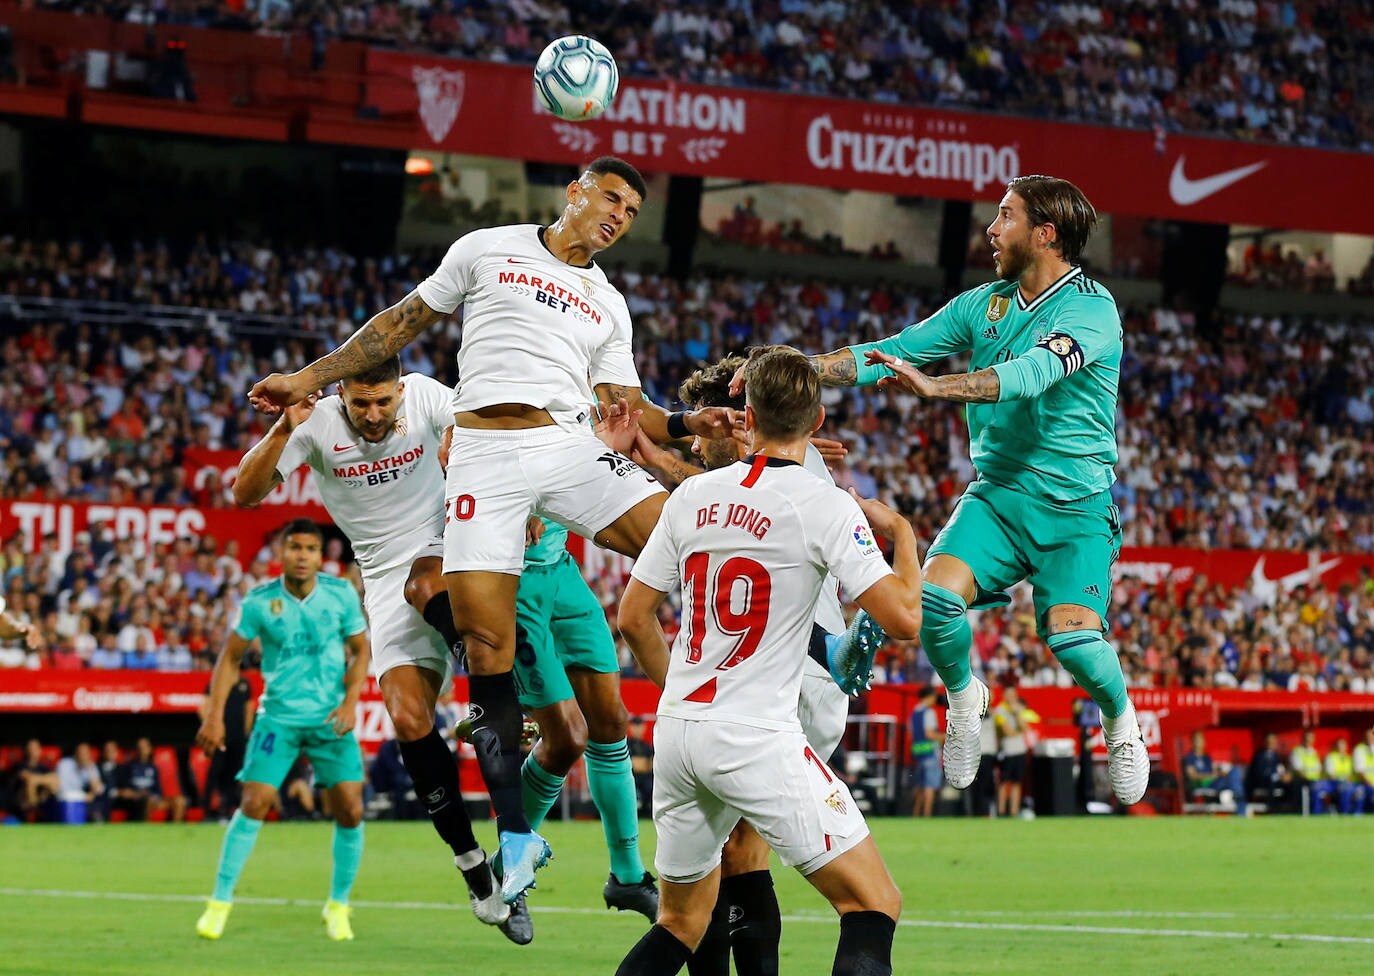 Las mejores imáganes del partido entre el Sevilla y el Real Madrid, disputado en el Sánchez Pizjuán.